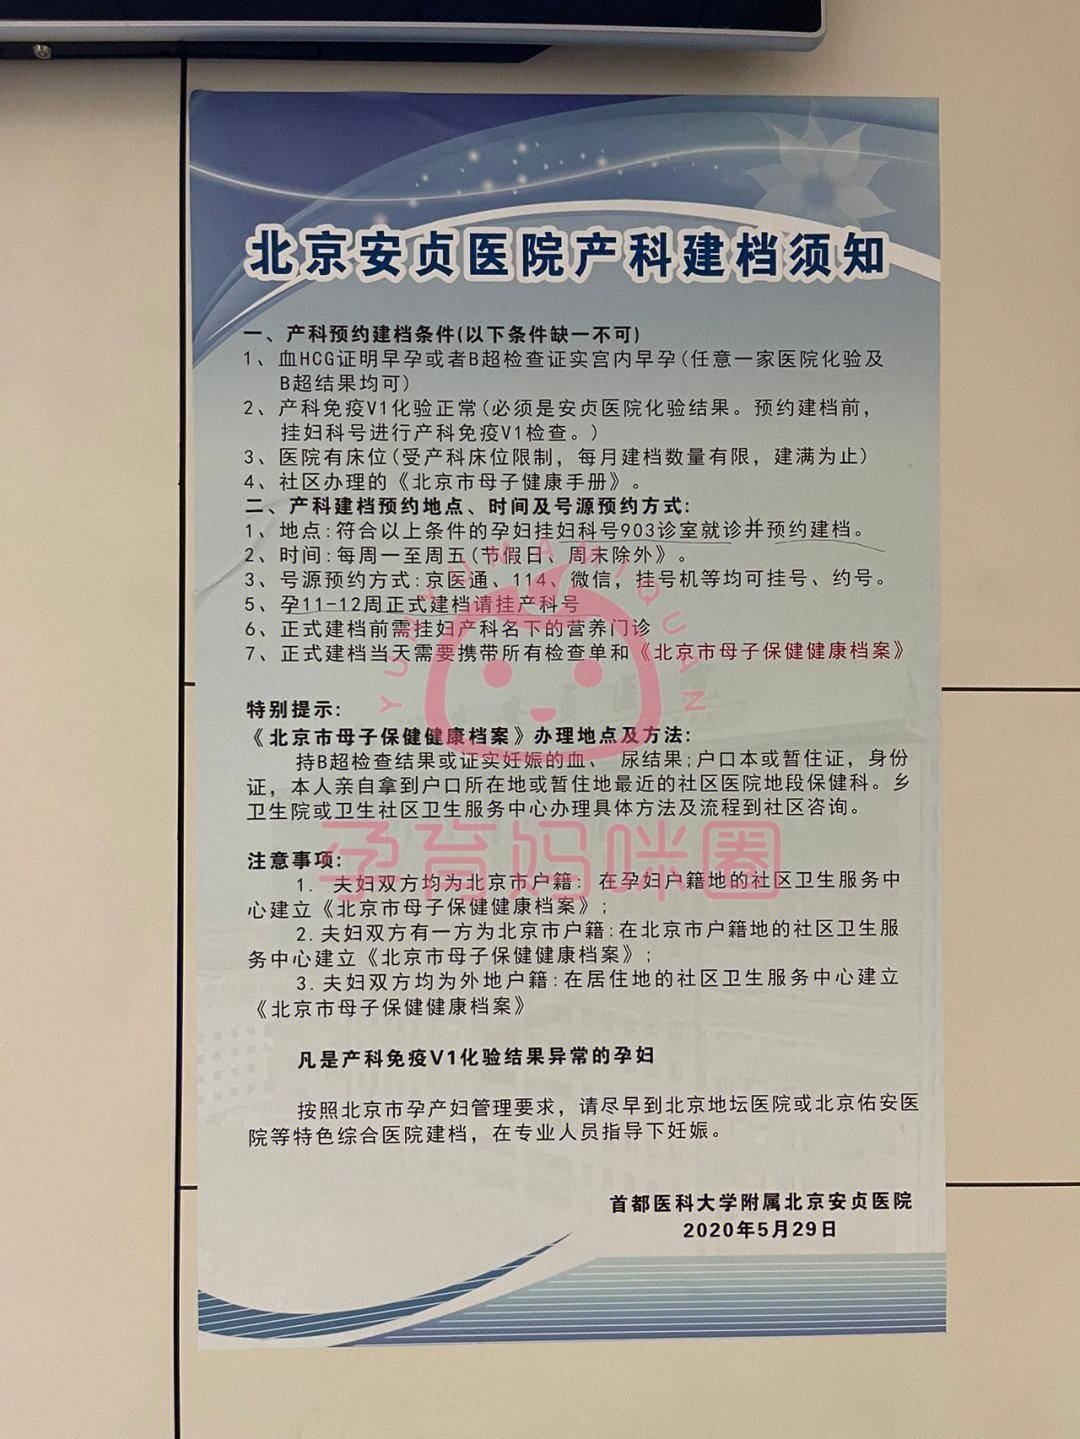 包含首都医科大学附属安贞医院全天黄牛票贩子电话的词条